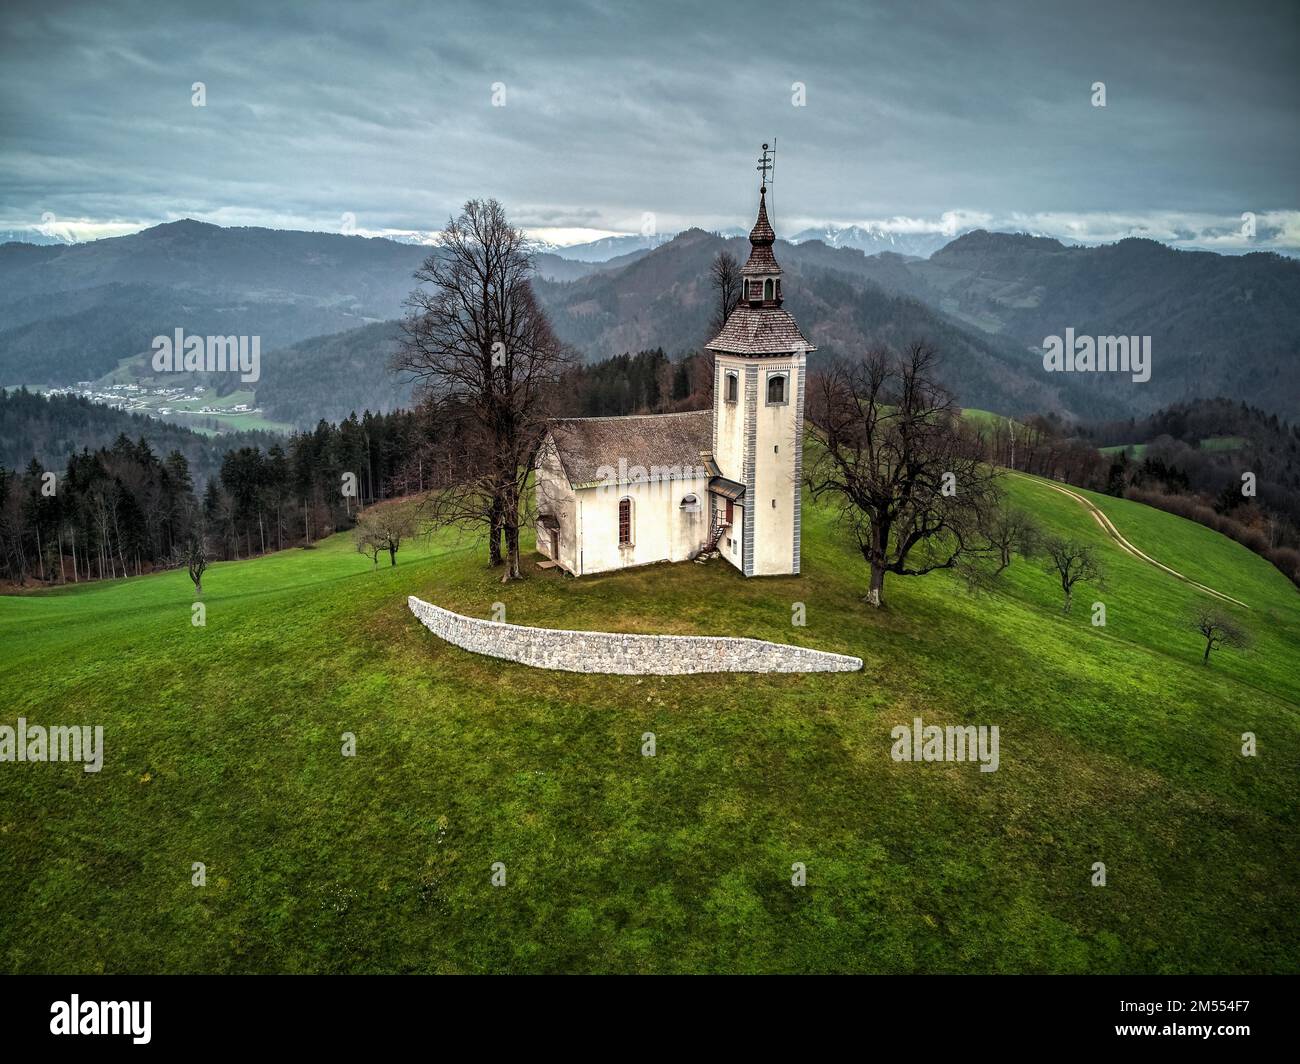 Blick auf die St. Thomas Kirche aus der Vogelperspektive. Foto aufgenommen am 30. November 2022 in der Stadt Skofja Loka, Region Oberkrain, Slowenien. Stockfoto